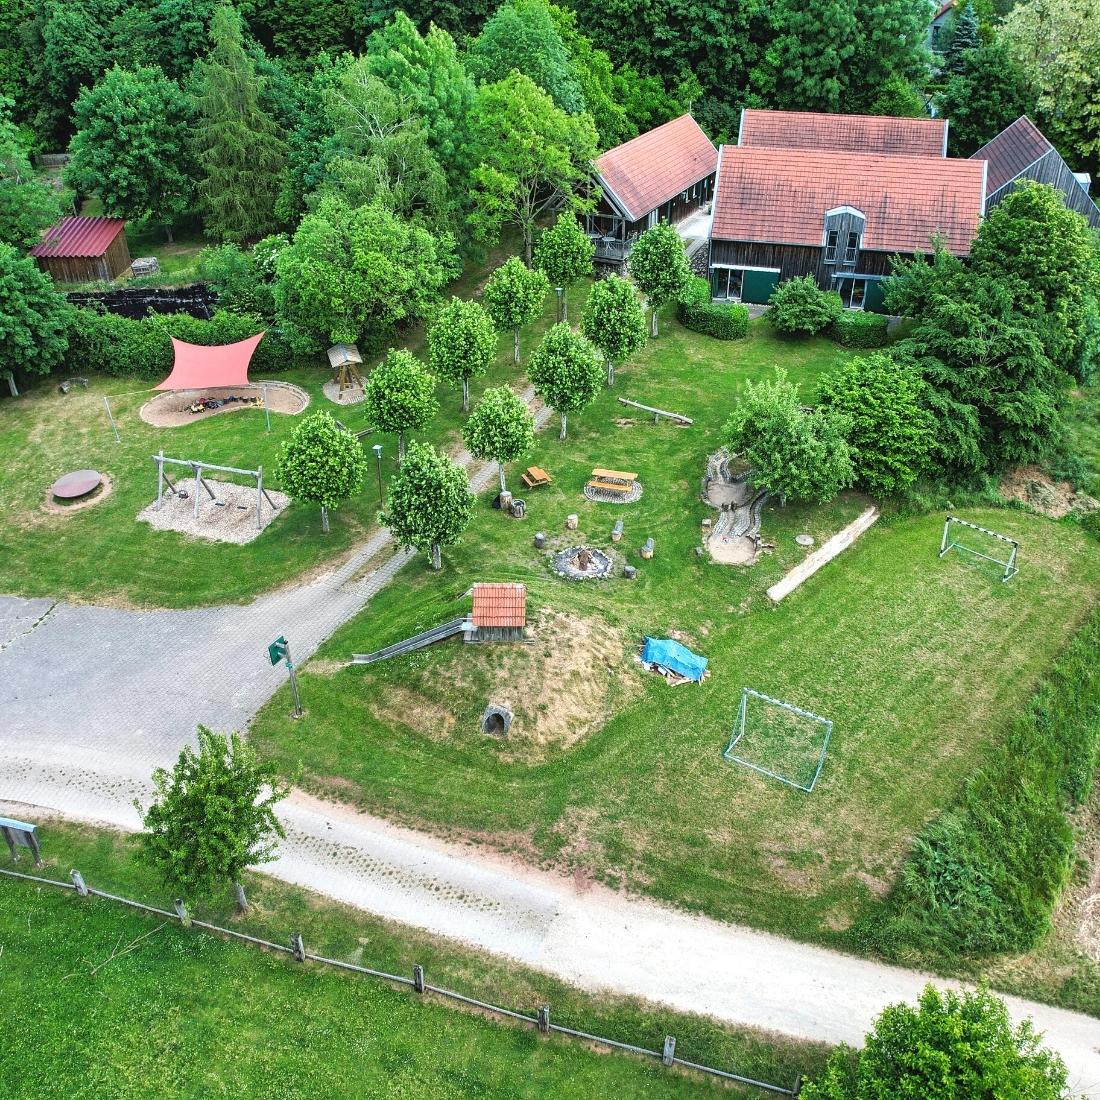 Urlaub auf dem Bauernhof in Bayern mit großen Spielplatz für Kinder.